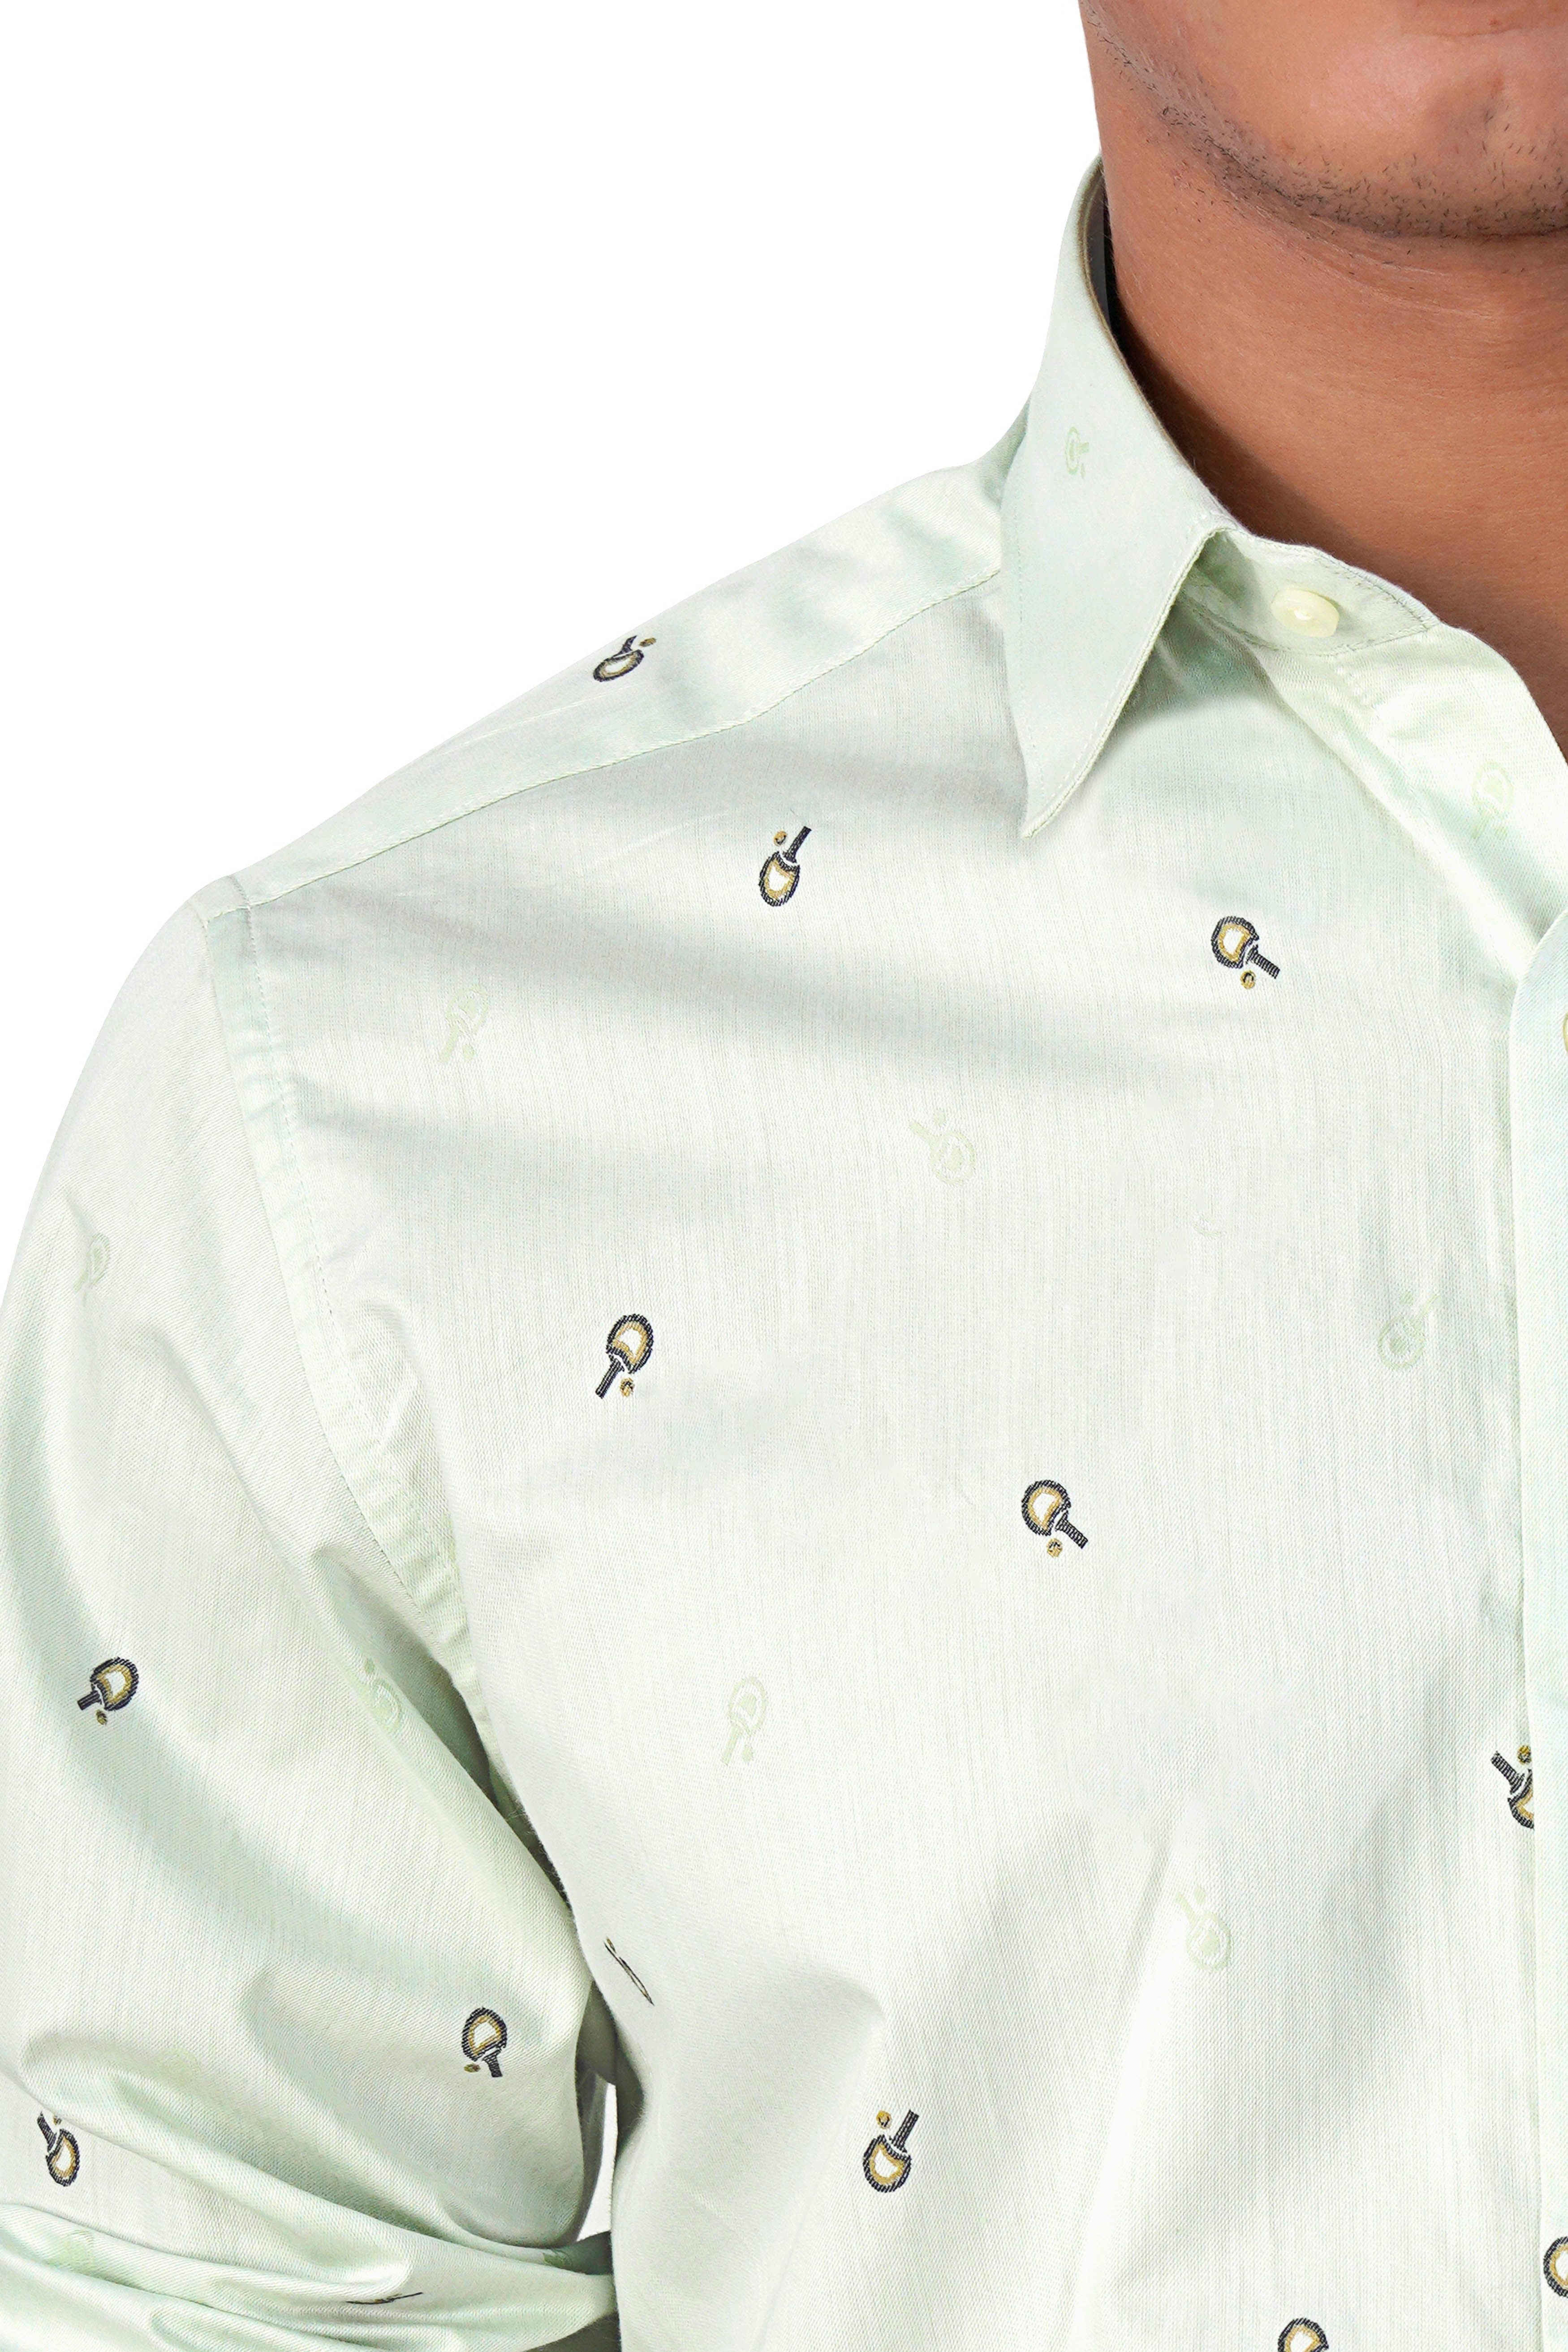 Eggshell Green Jacquard Textured Premium Giza Cotton Shirt